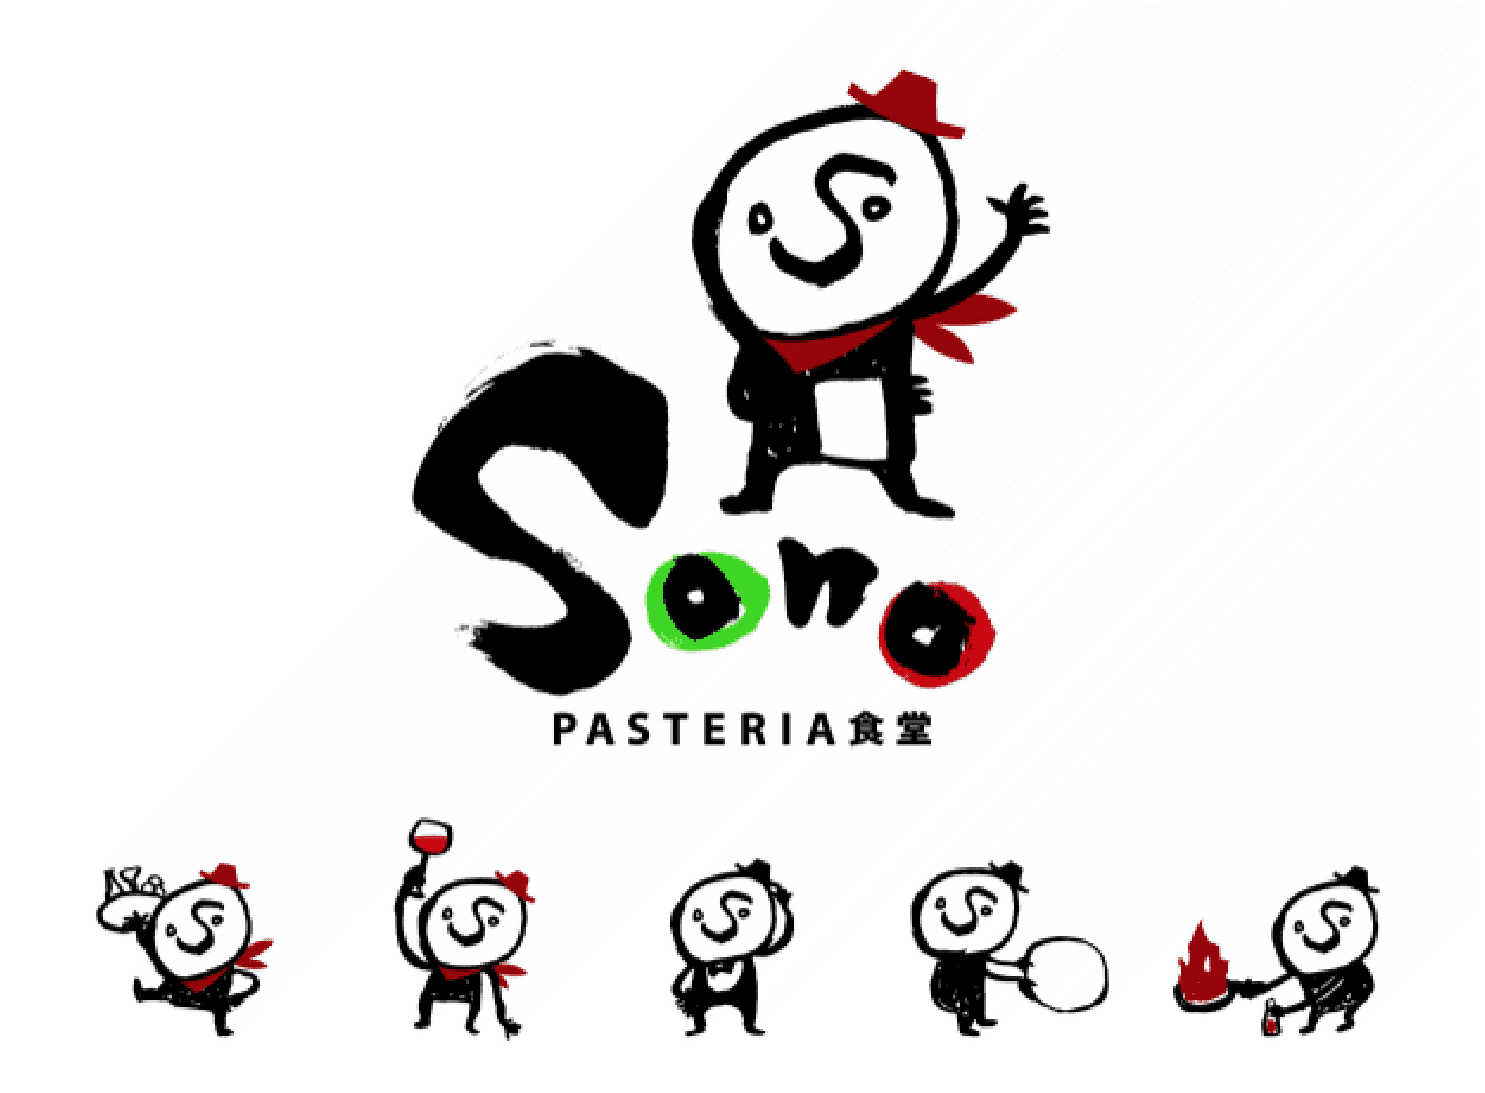 「PASTERIA食堂 sono」 ロゴ・キャラクター